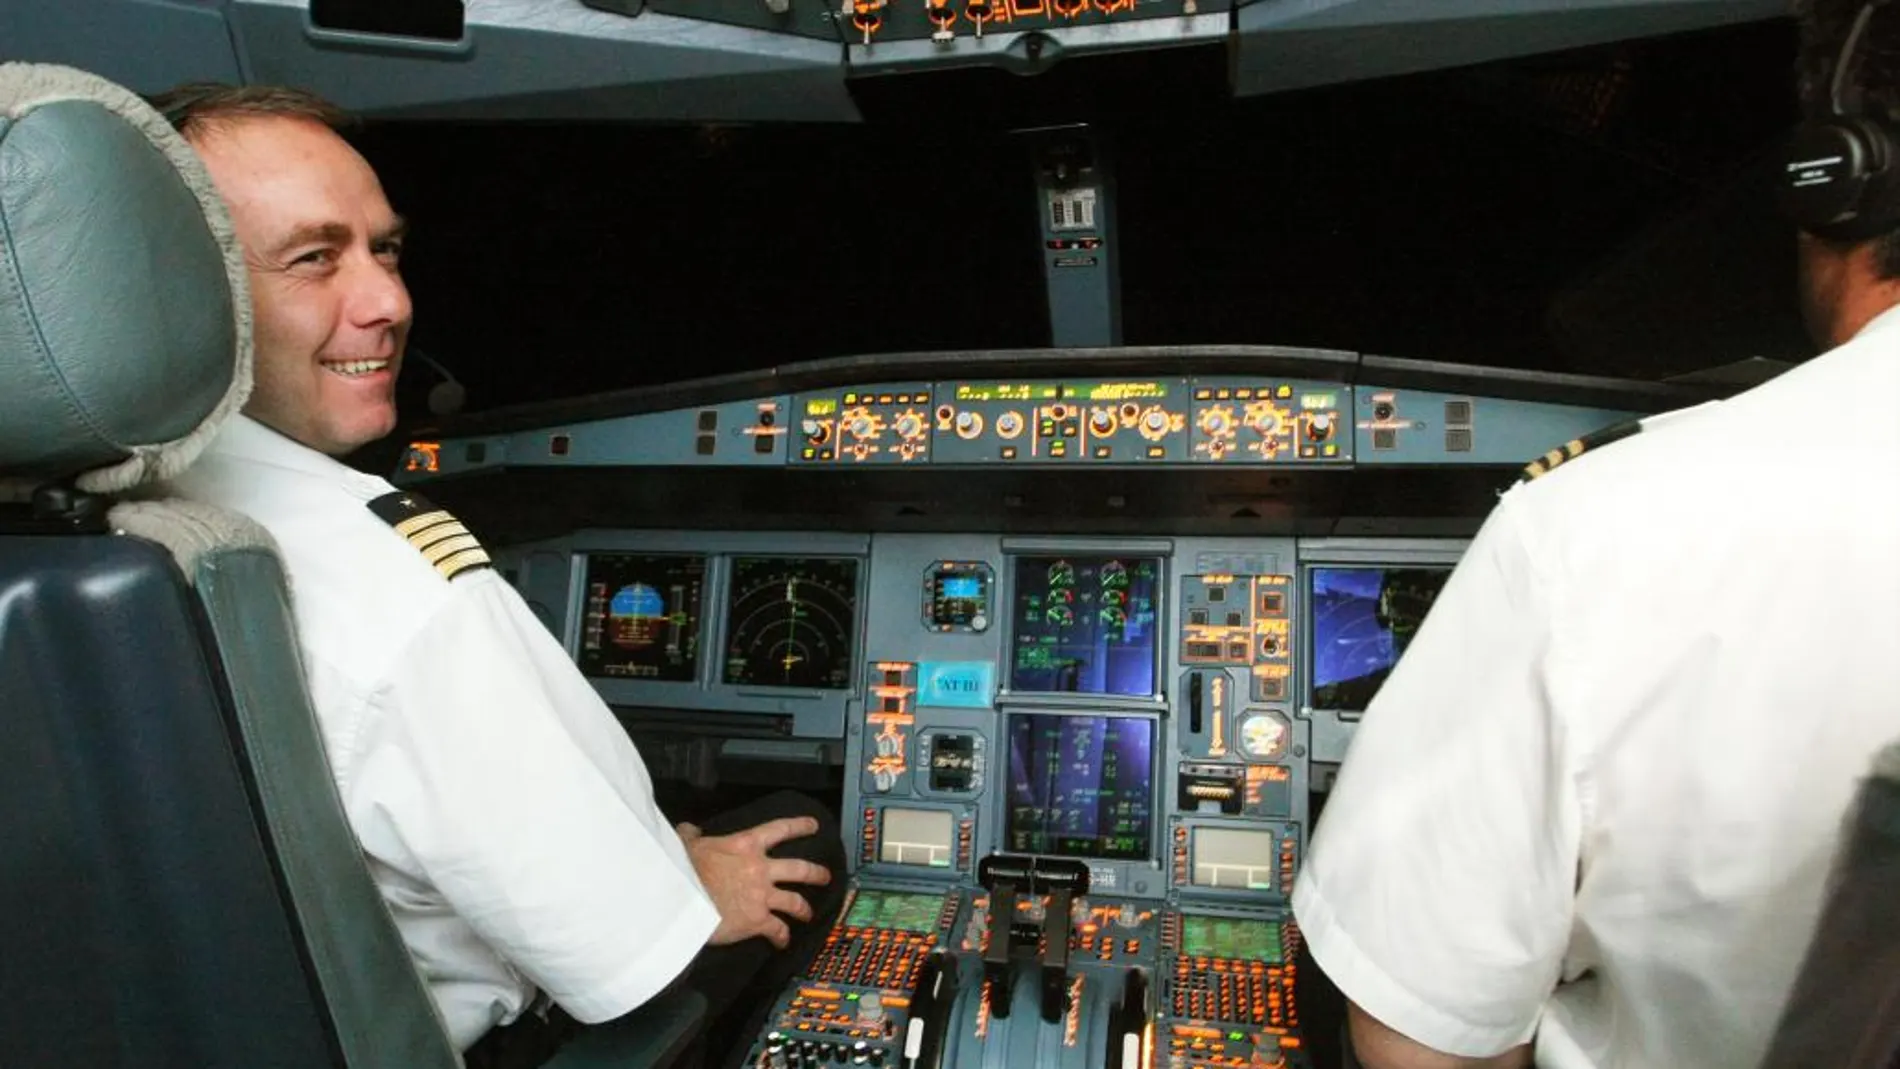 Los pilotos mayores de 65 años podrán ser instructores de vuelo o examinadores